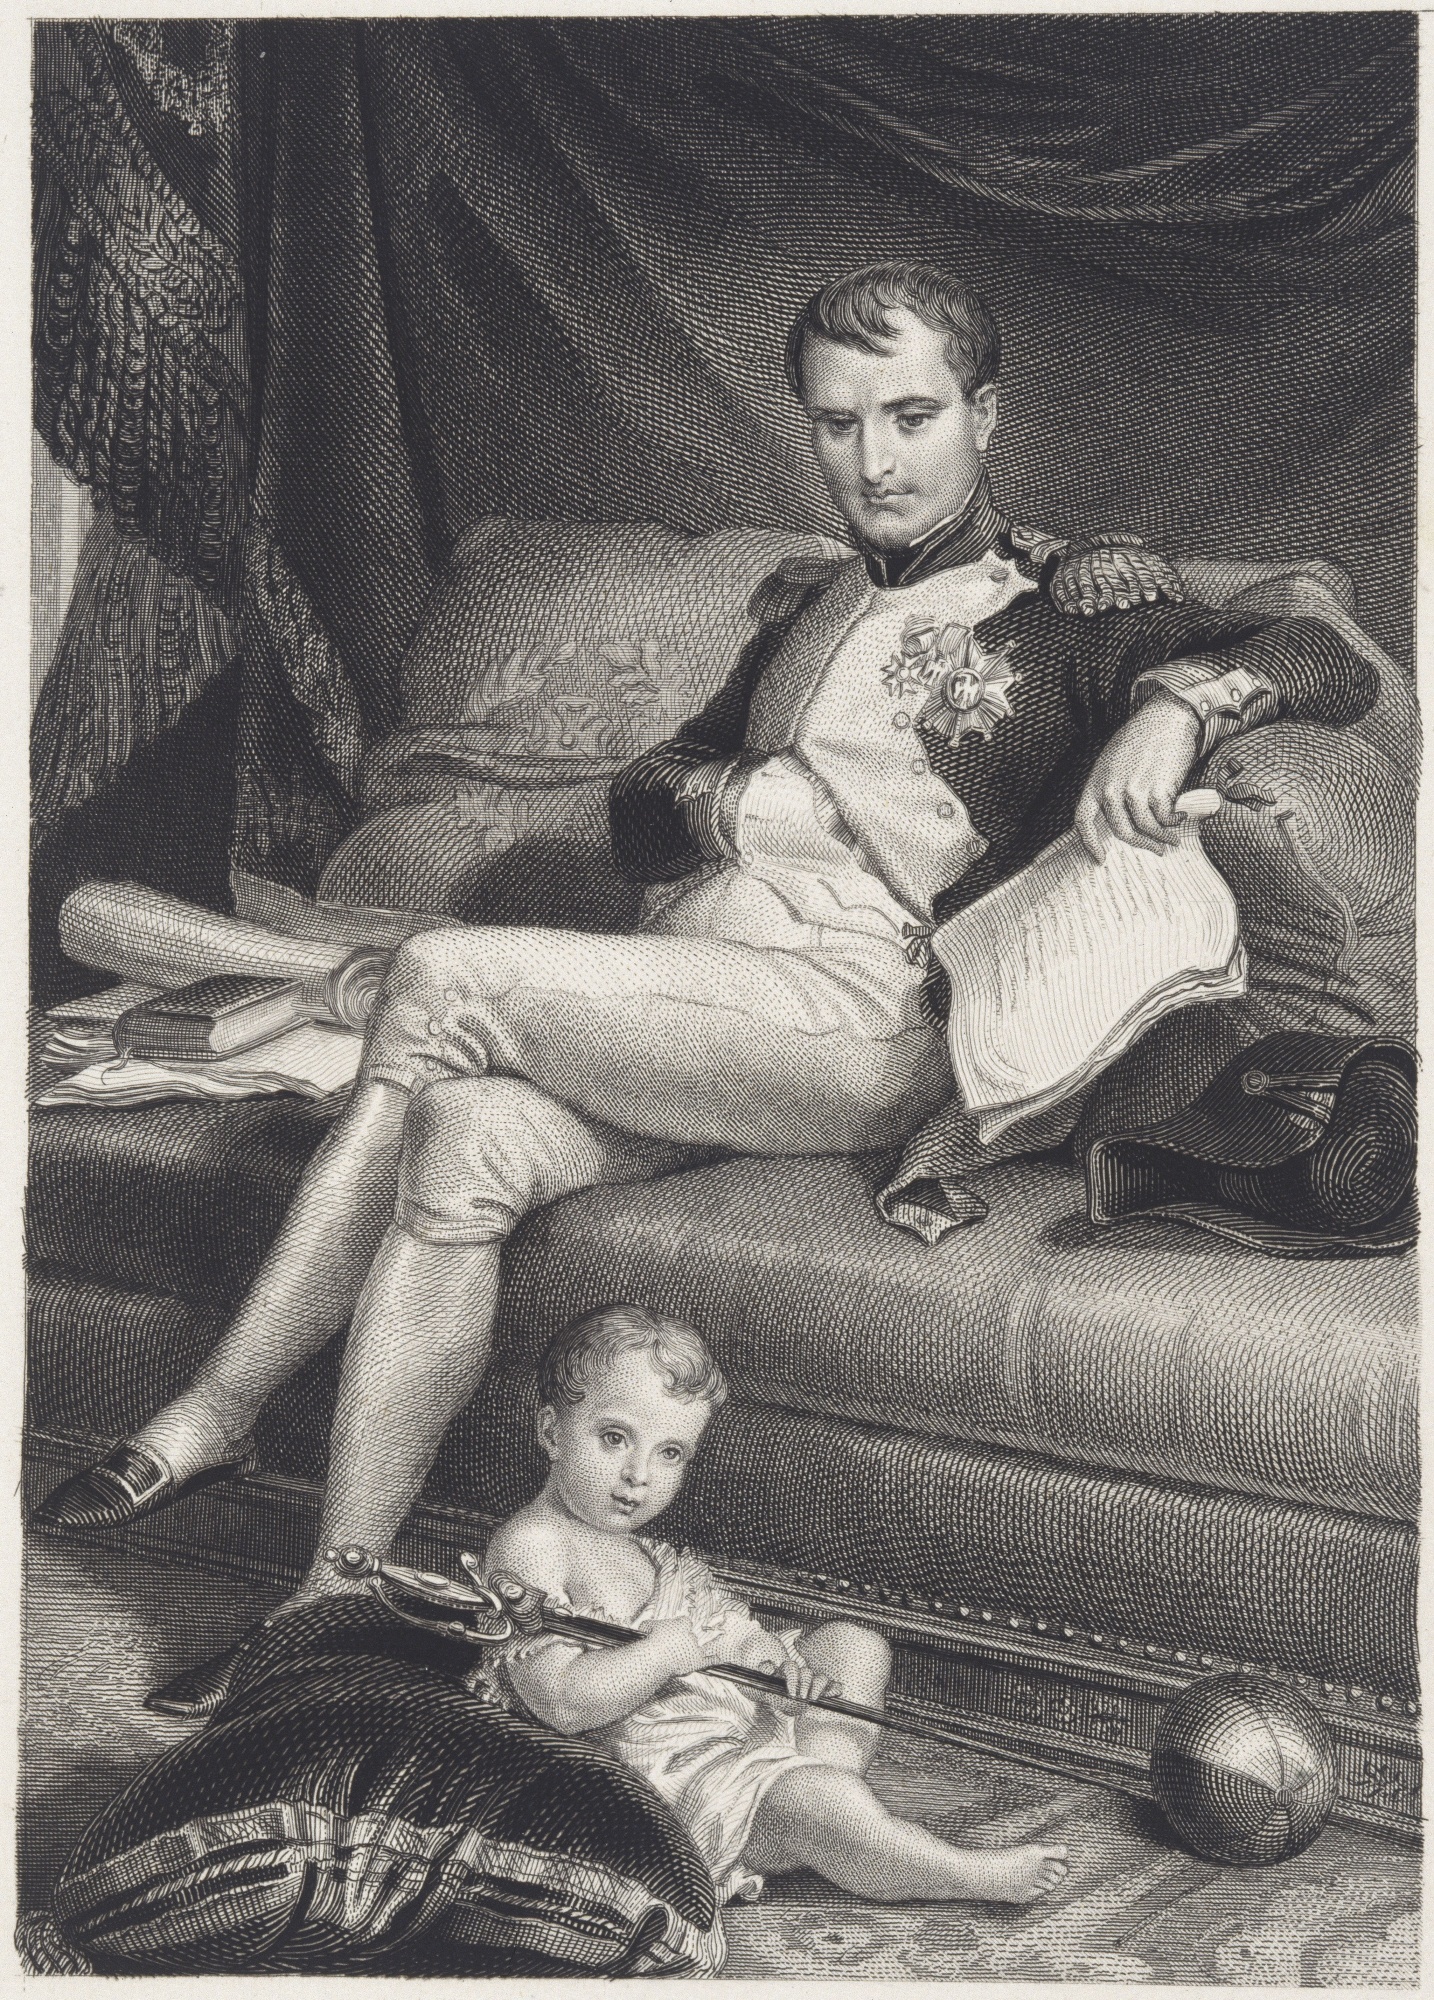 What Happened To Napoleon's Son?